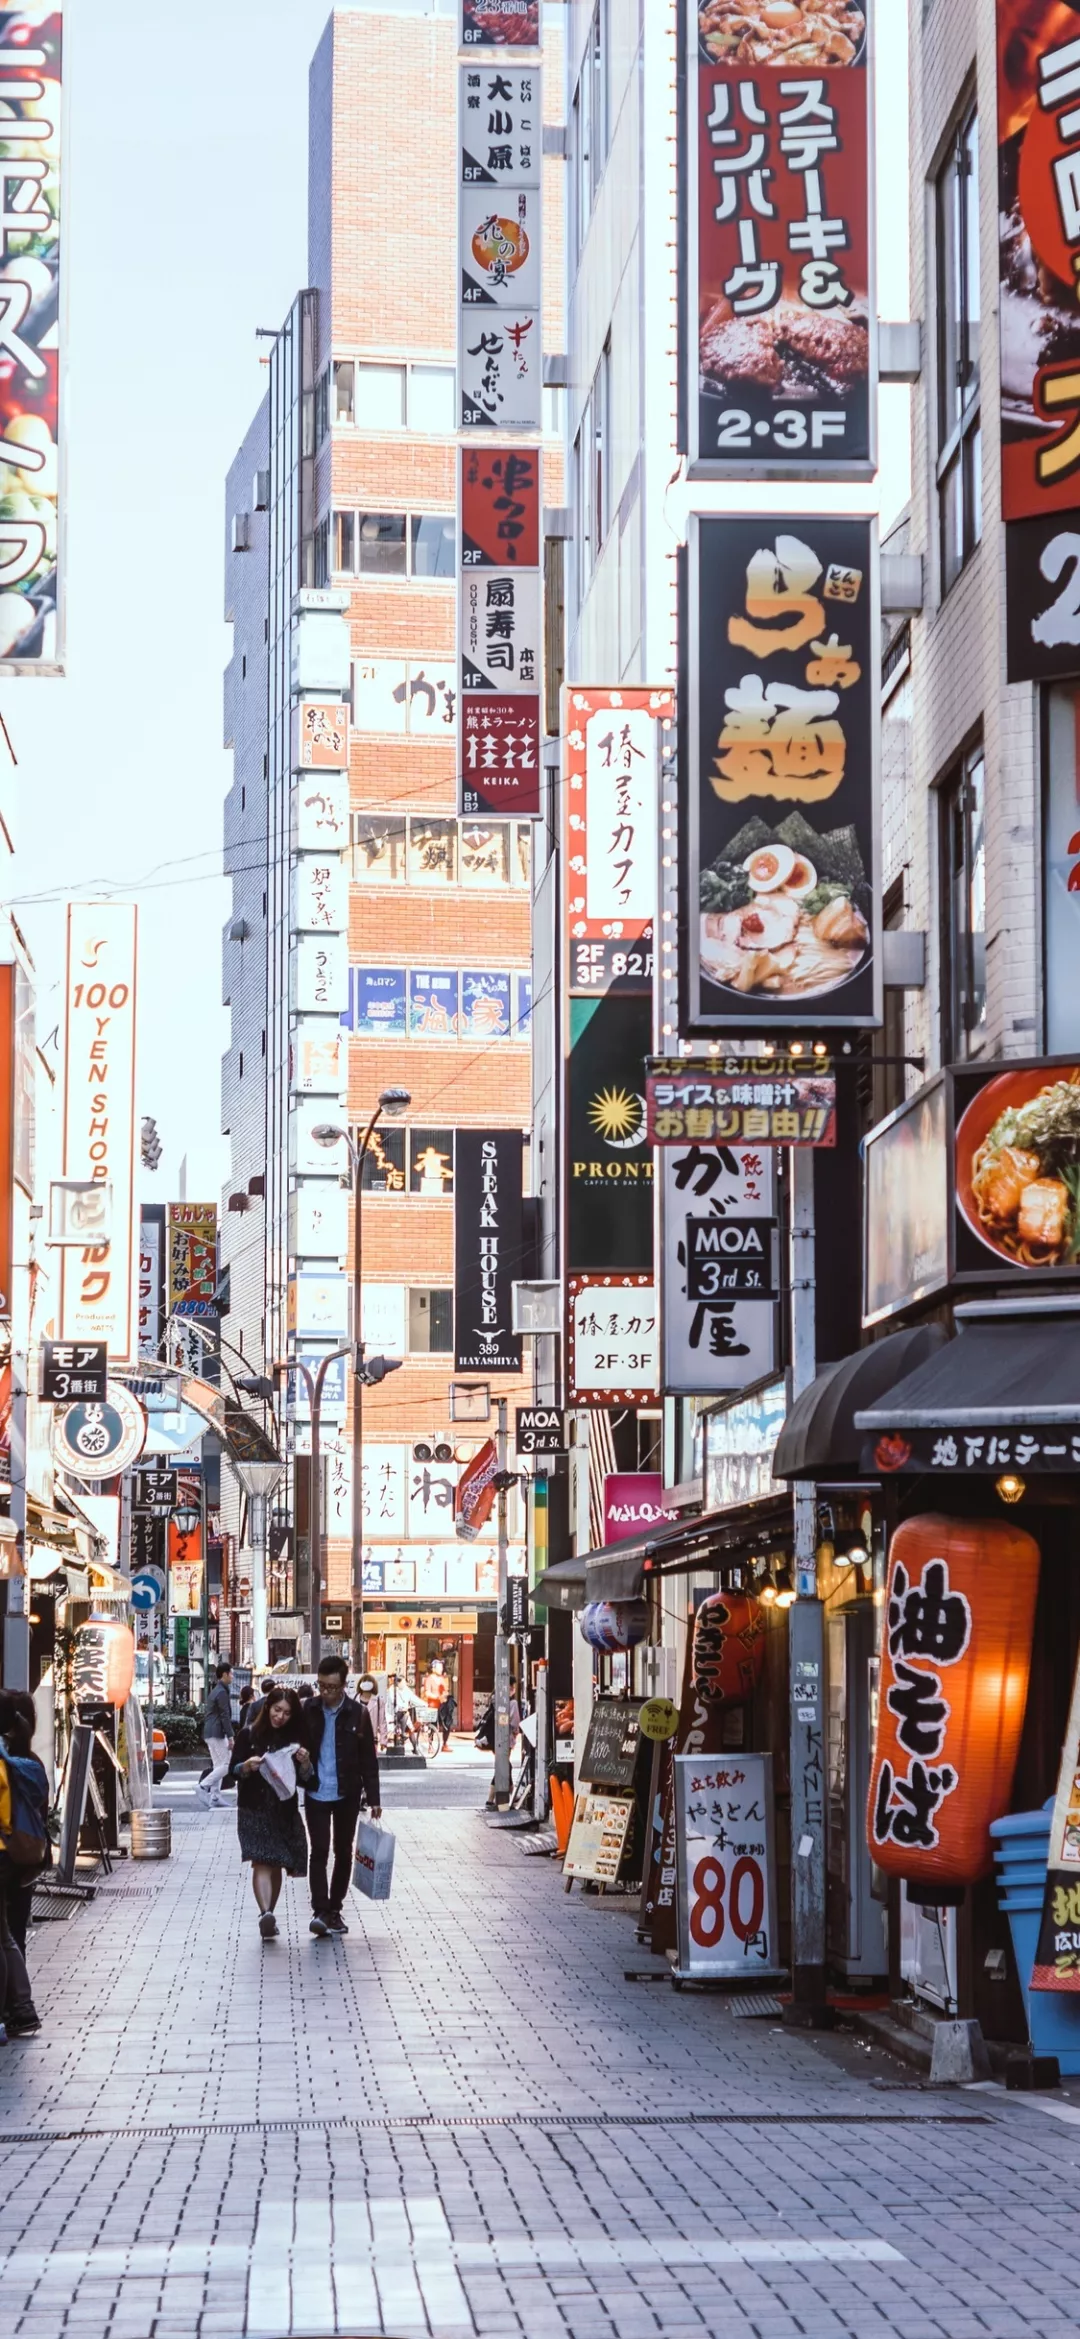 有没有像这种日本街头风的壁纸?